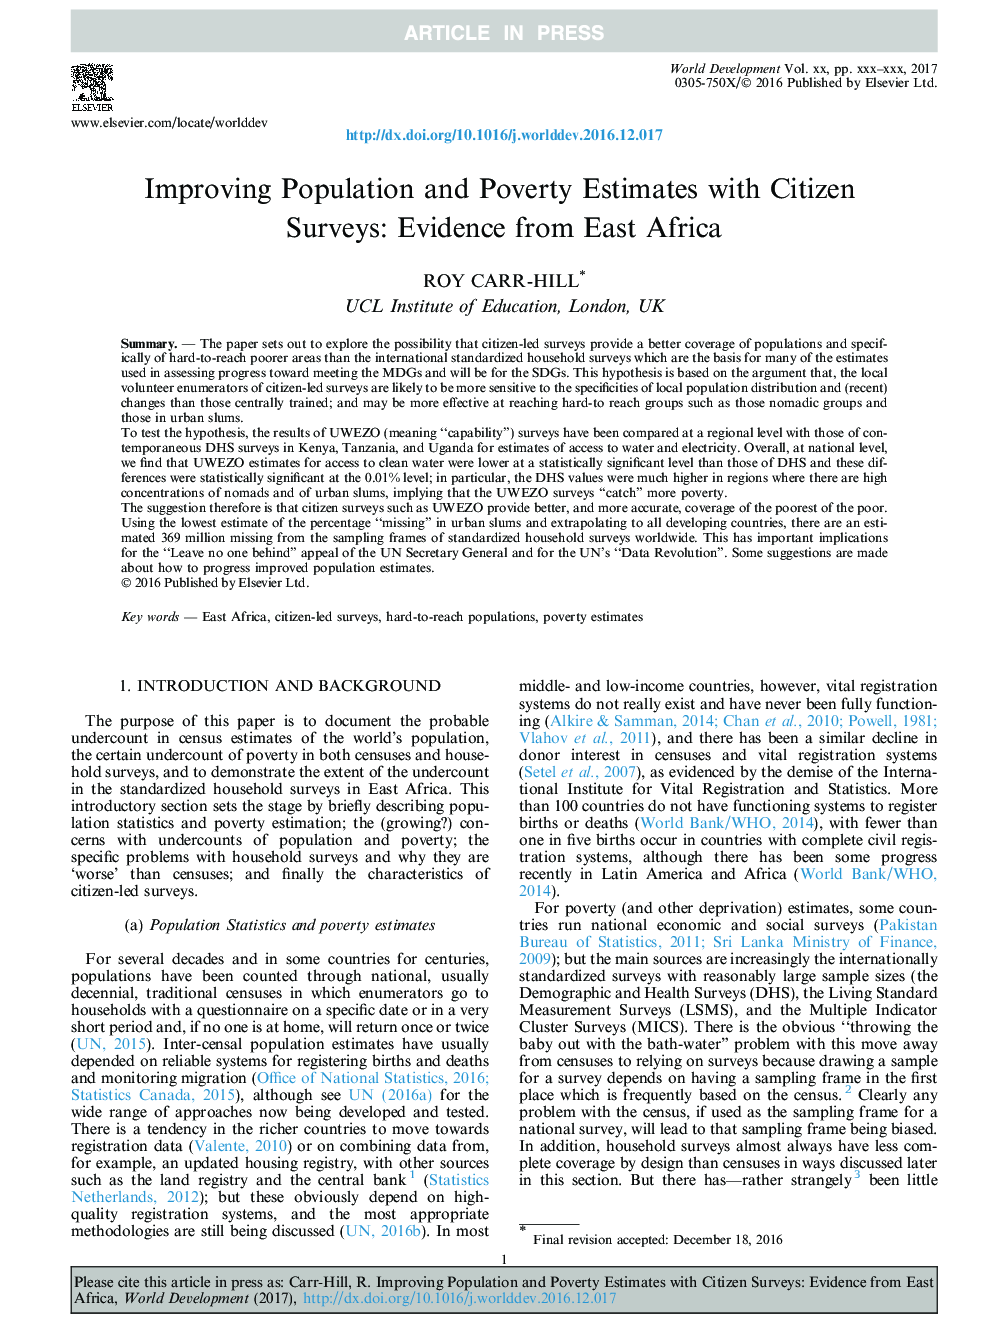 بهبود جمعیت و برآورد فقر با مطالعات شهروندان: شواهد از شرق آفریقا 